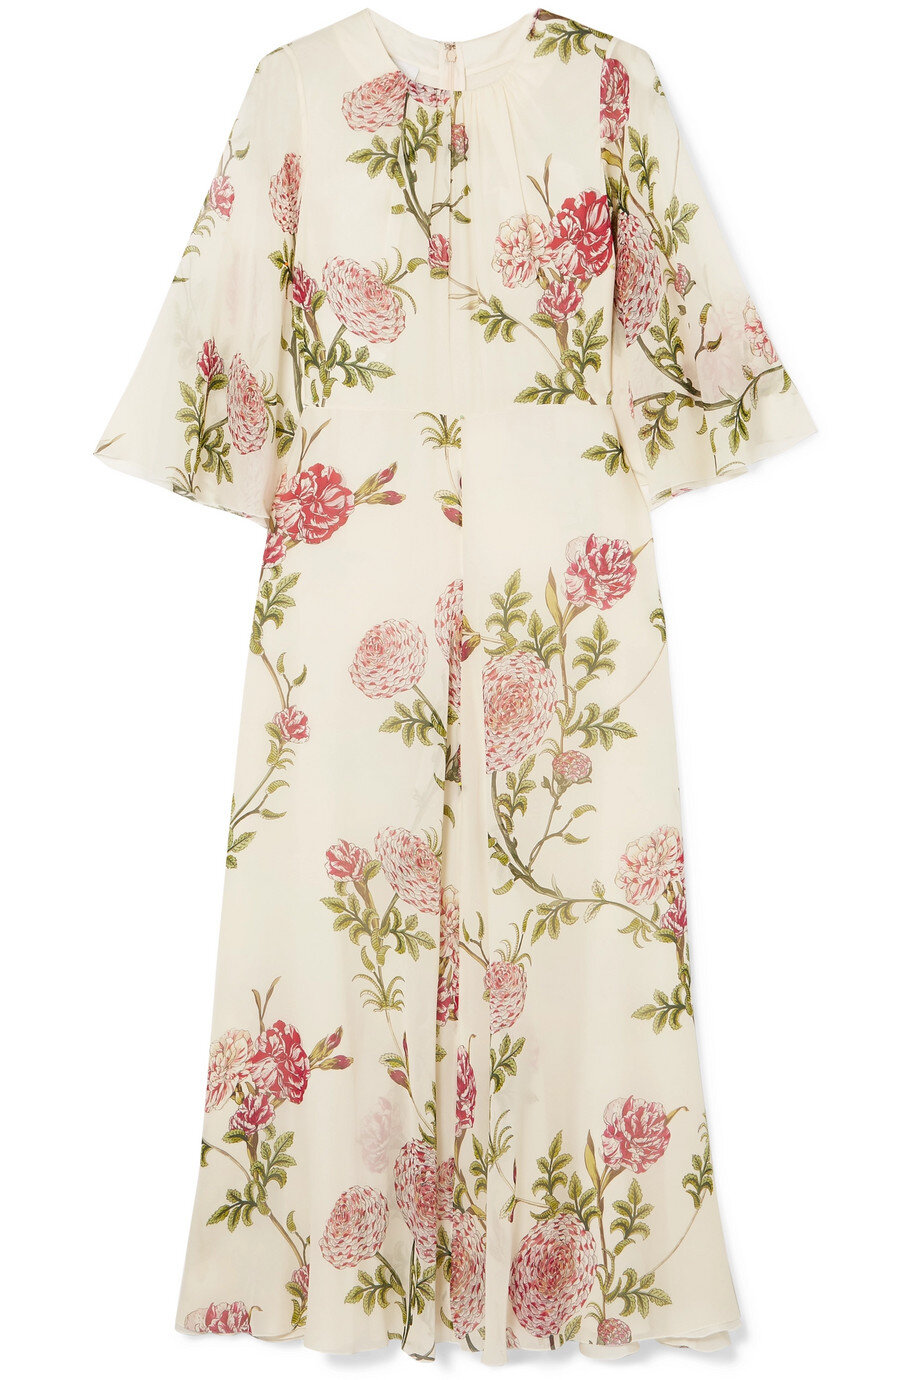 Giambattista Valli Floral-Print Midi Dress.jpg